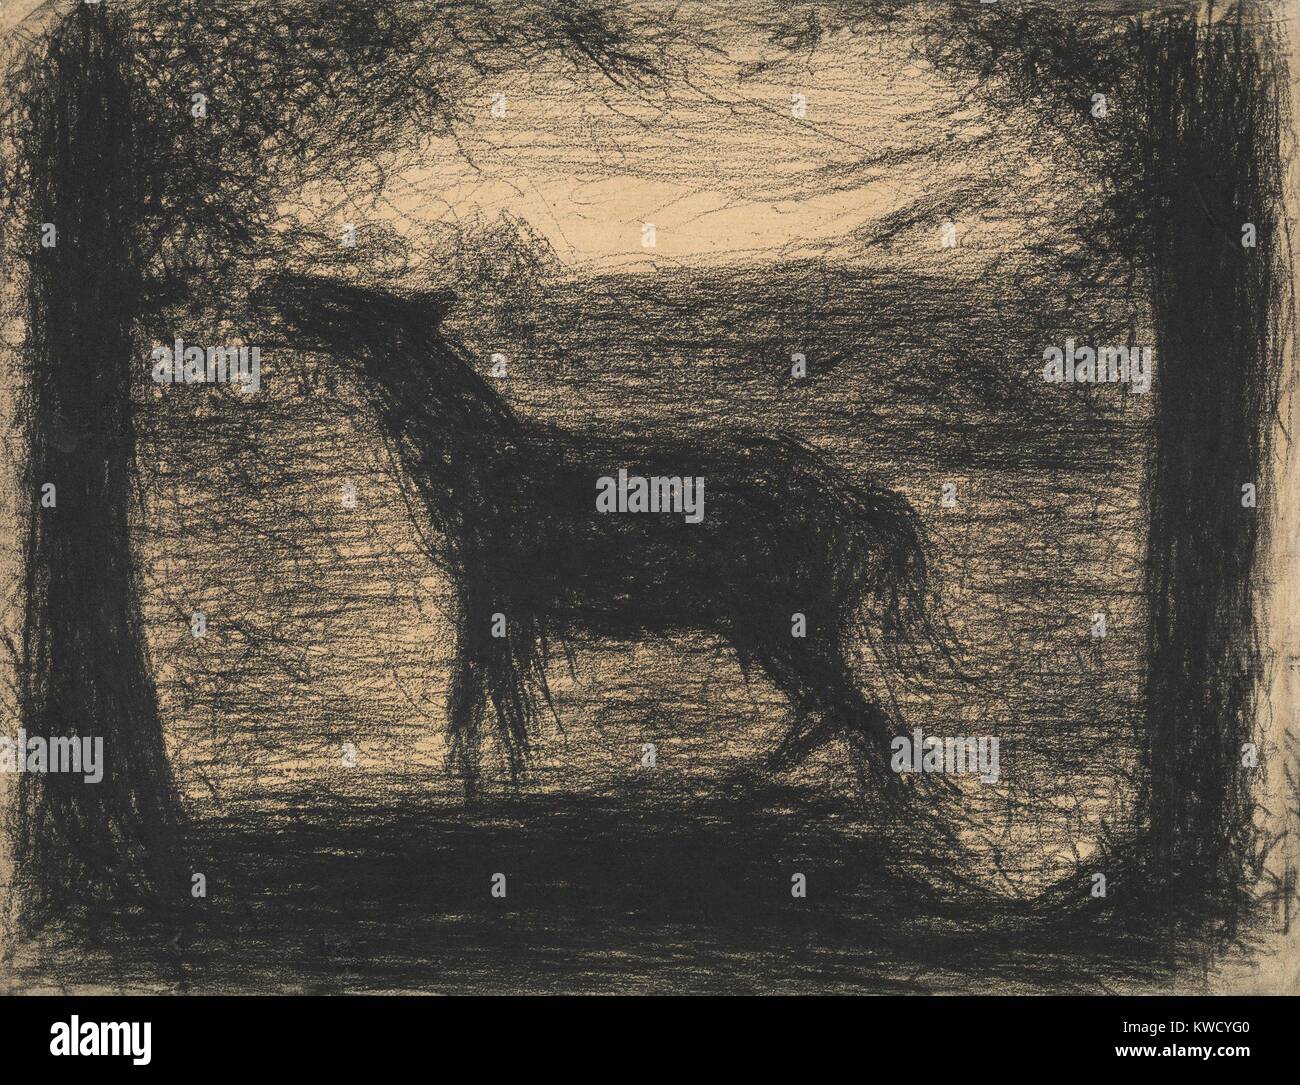 Fohlen (Colt) , von Georges Seurat, 1882-83, French Post-Impressionist Zeichnung, Conte crayon. Linien erstellen und aktive Fläche mit einem Tiere und Bäume Silhouette gegen ein allgemeines Landschaft (BSLOC 2017 5 86) Stockfoto